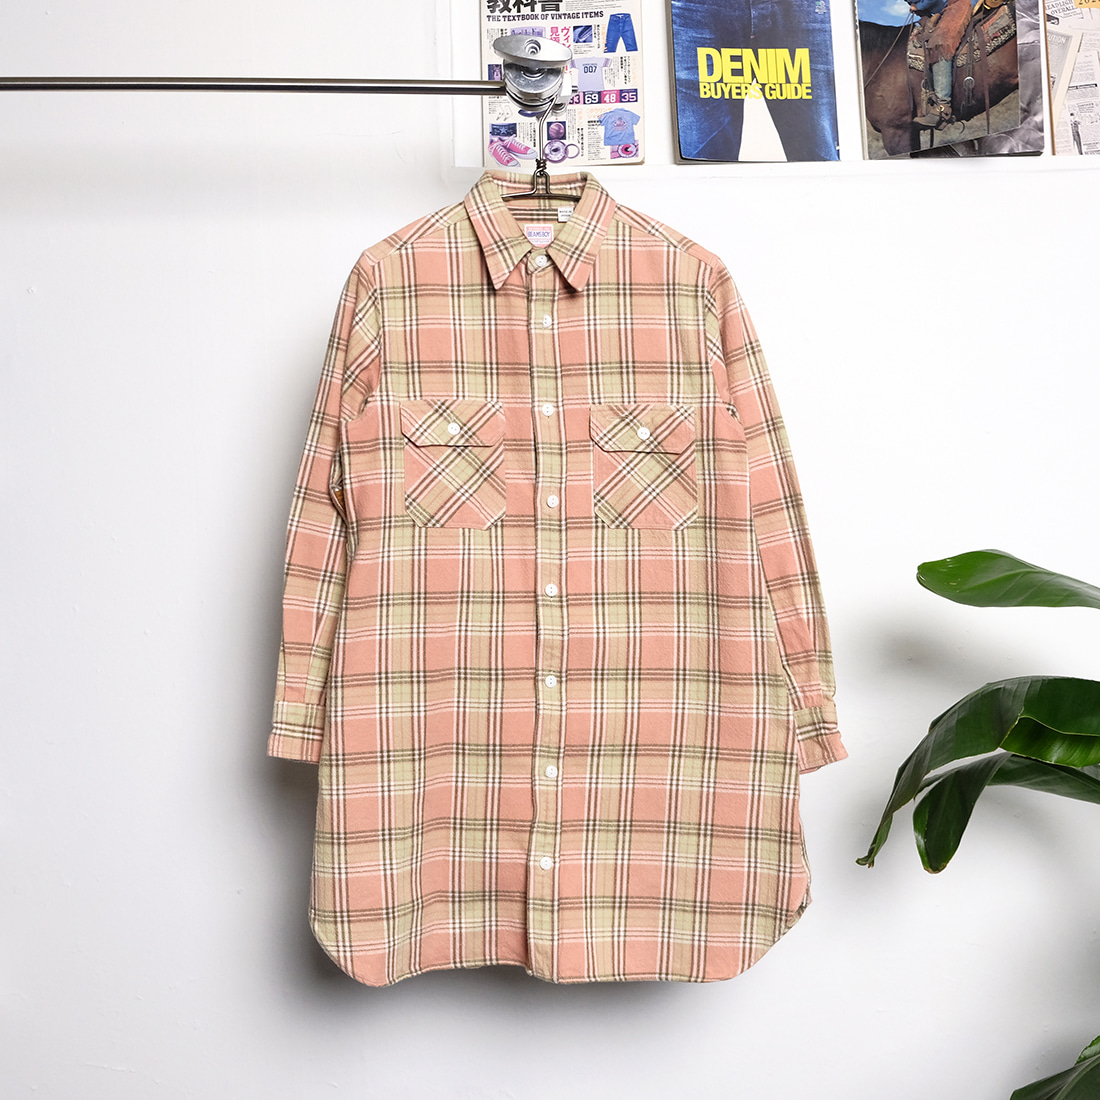 빔즈 보이 / Made in japan  Beams boy flannel long check shirt